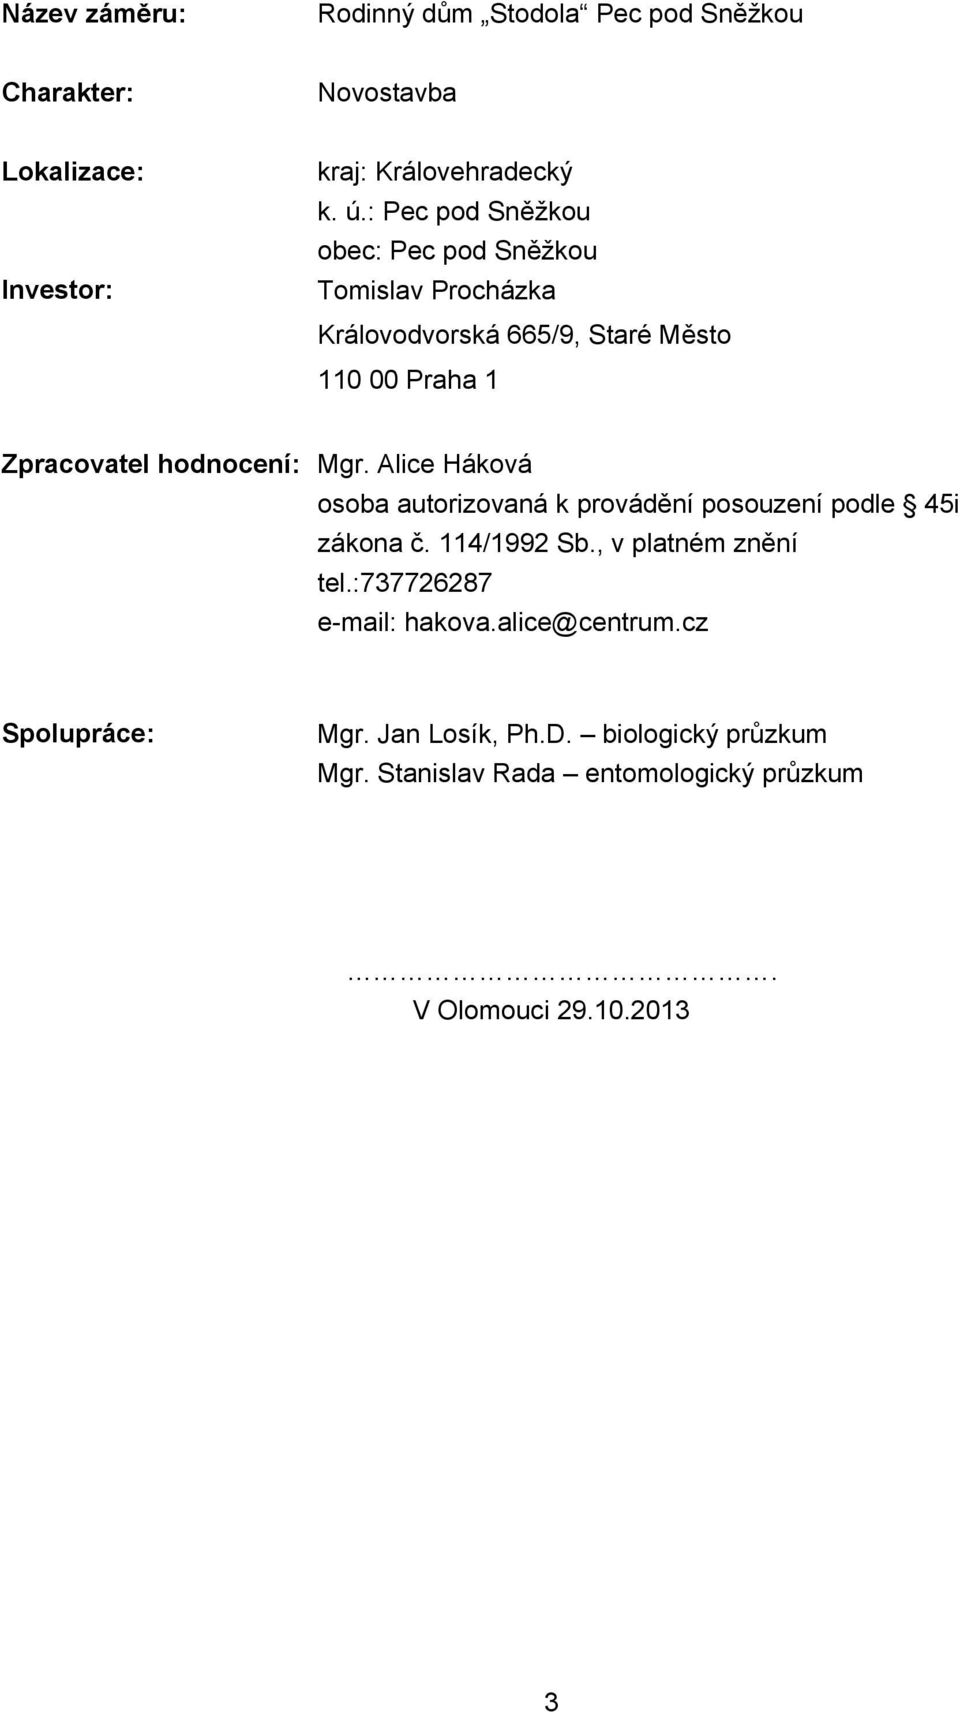 hodnocení: Mgr. Alice Háková osoba autorizovaná k provádění posouzení podle 45i zákona č. 114/1992 Sb., v platném znění tel.